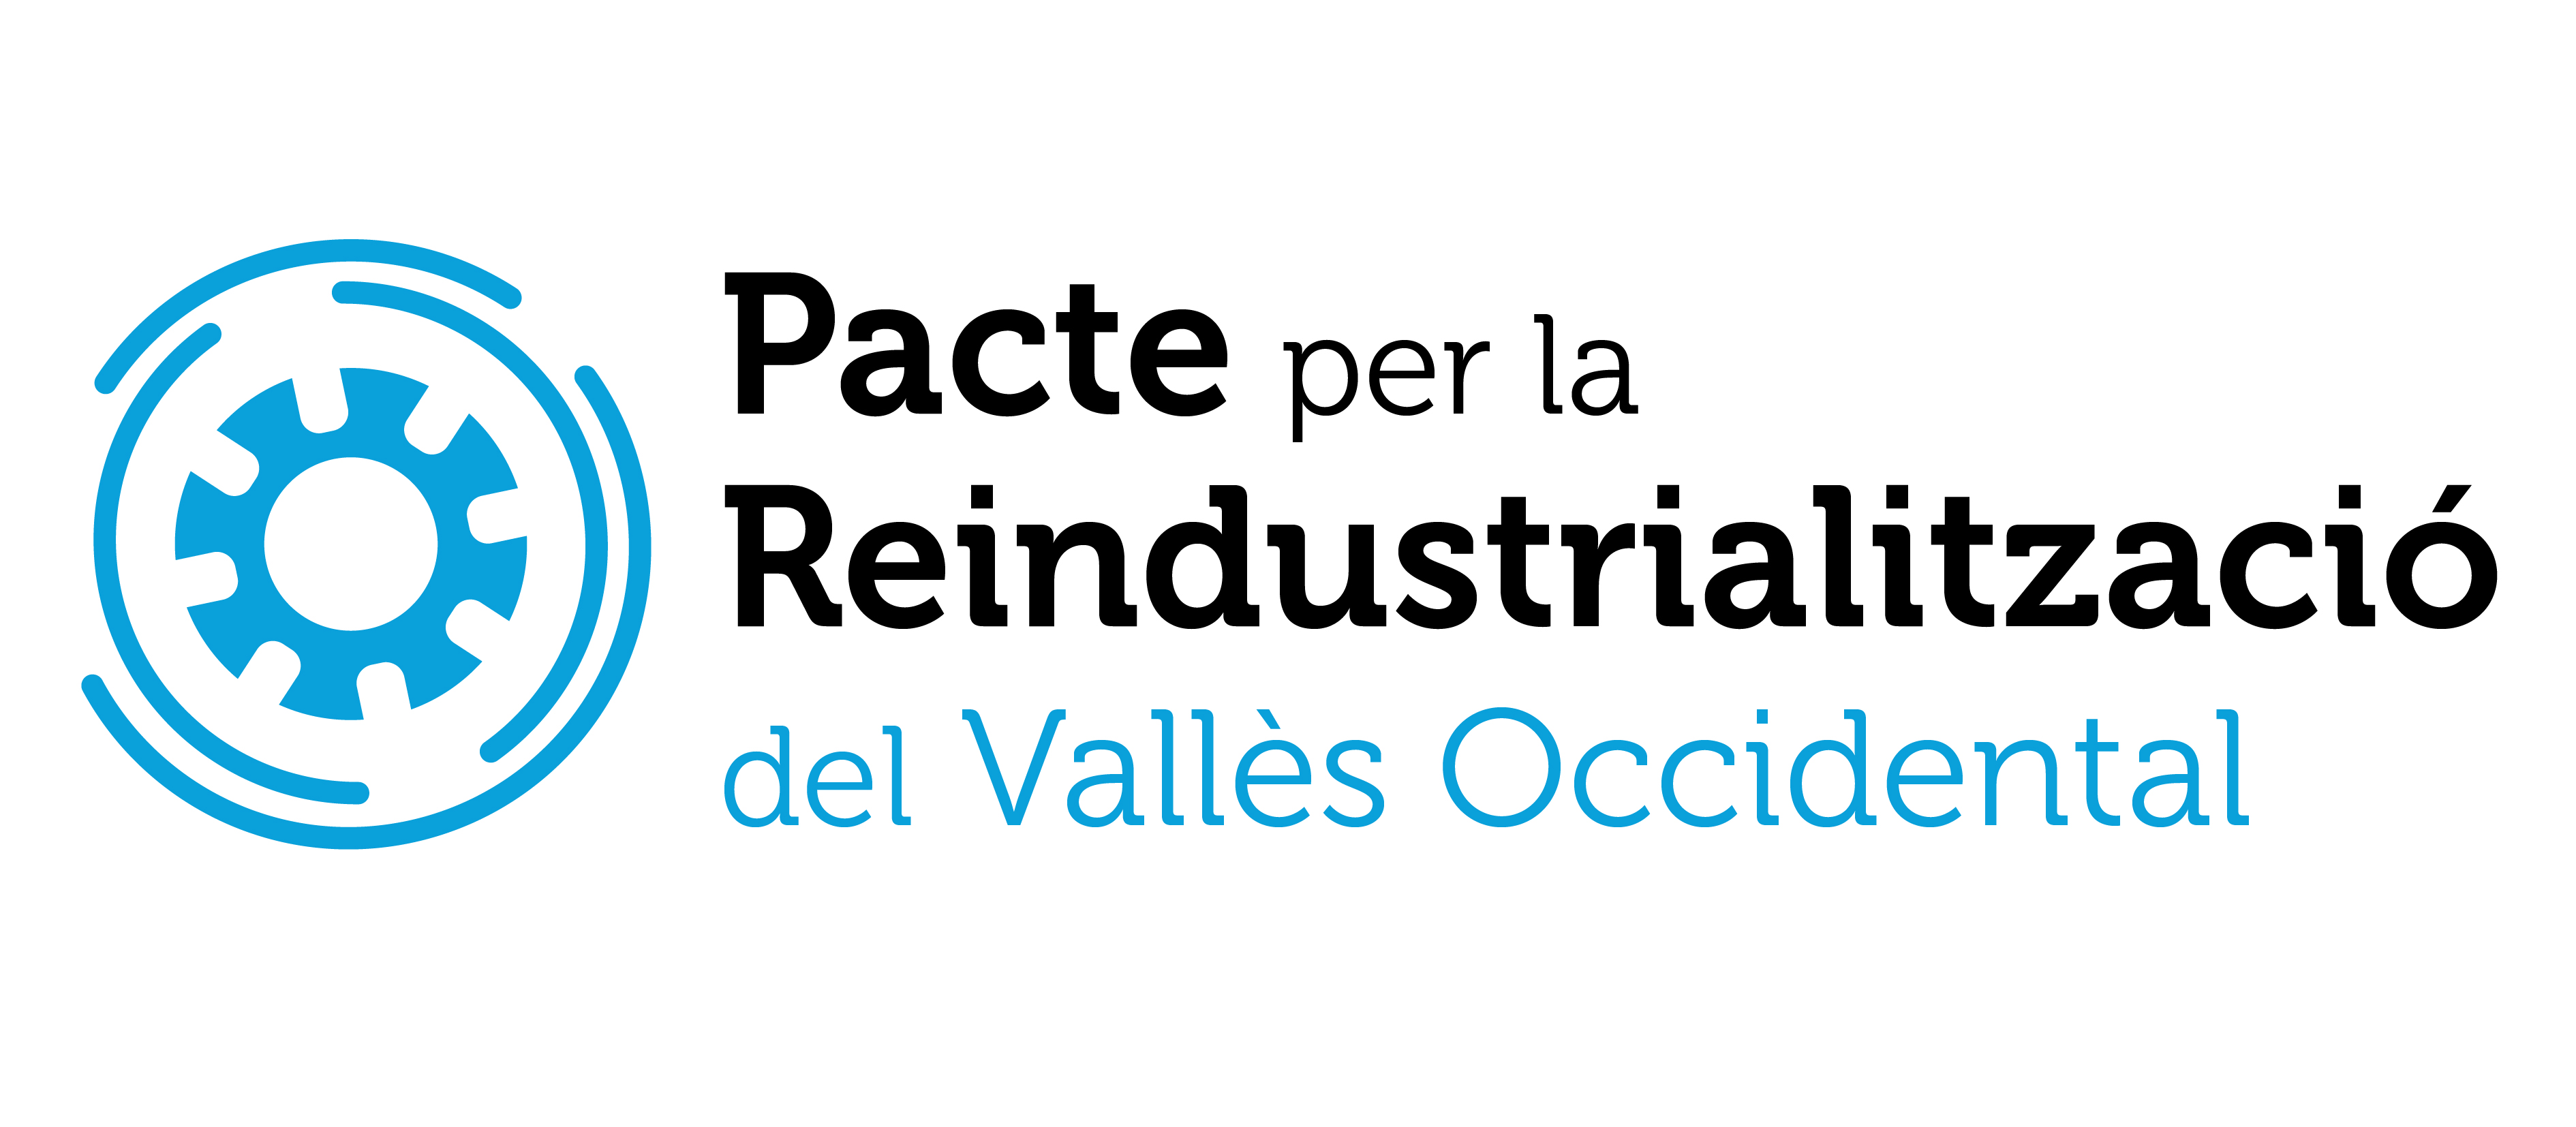 Nova imatge corporativa del Pacte per la reindustrialització del Vallès Occidental 